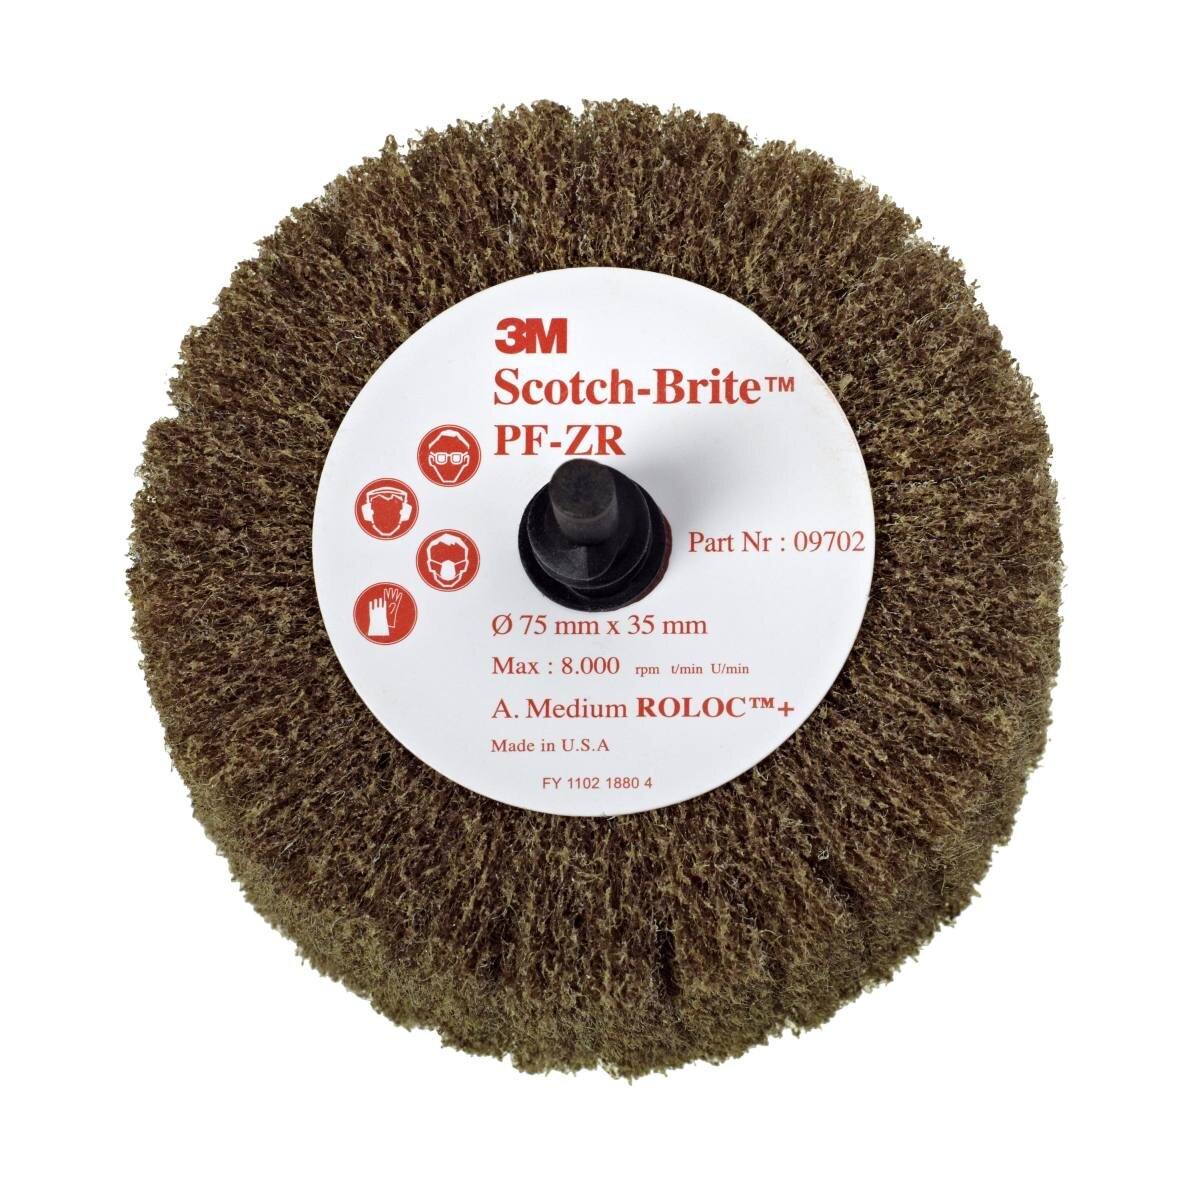 3M Scotch-Brite Roloc Flap brush PF-ZR, brown, 50.8 mm, 25 mm, A, medium #09700